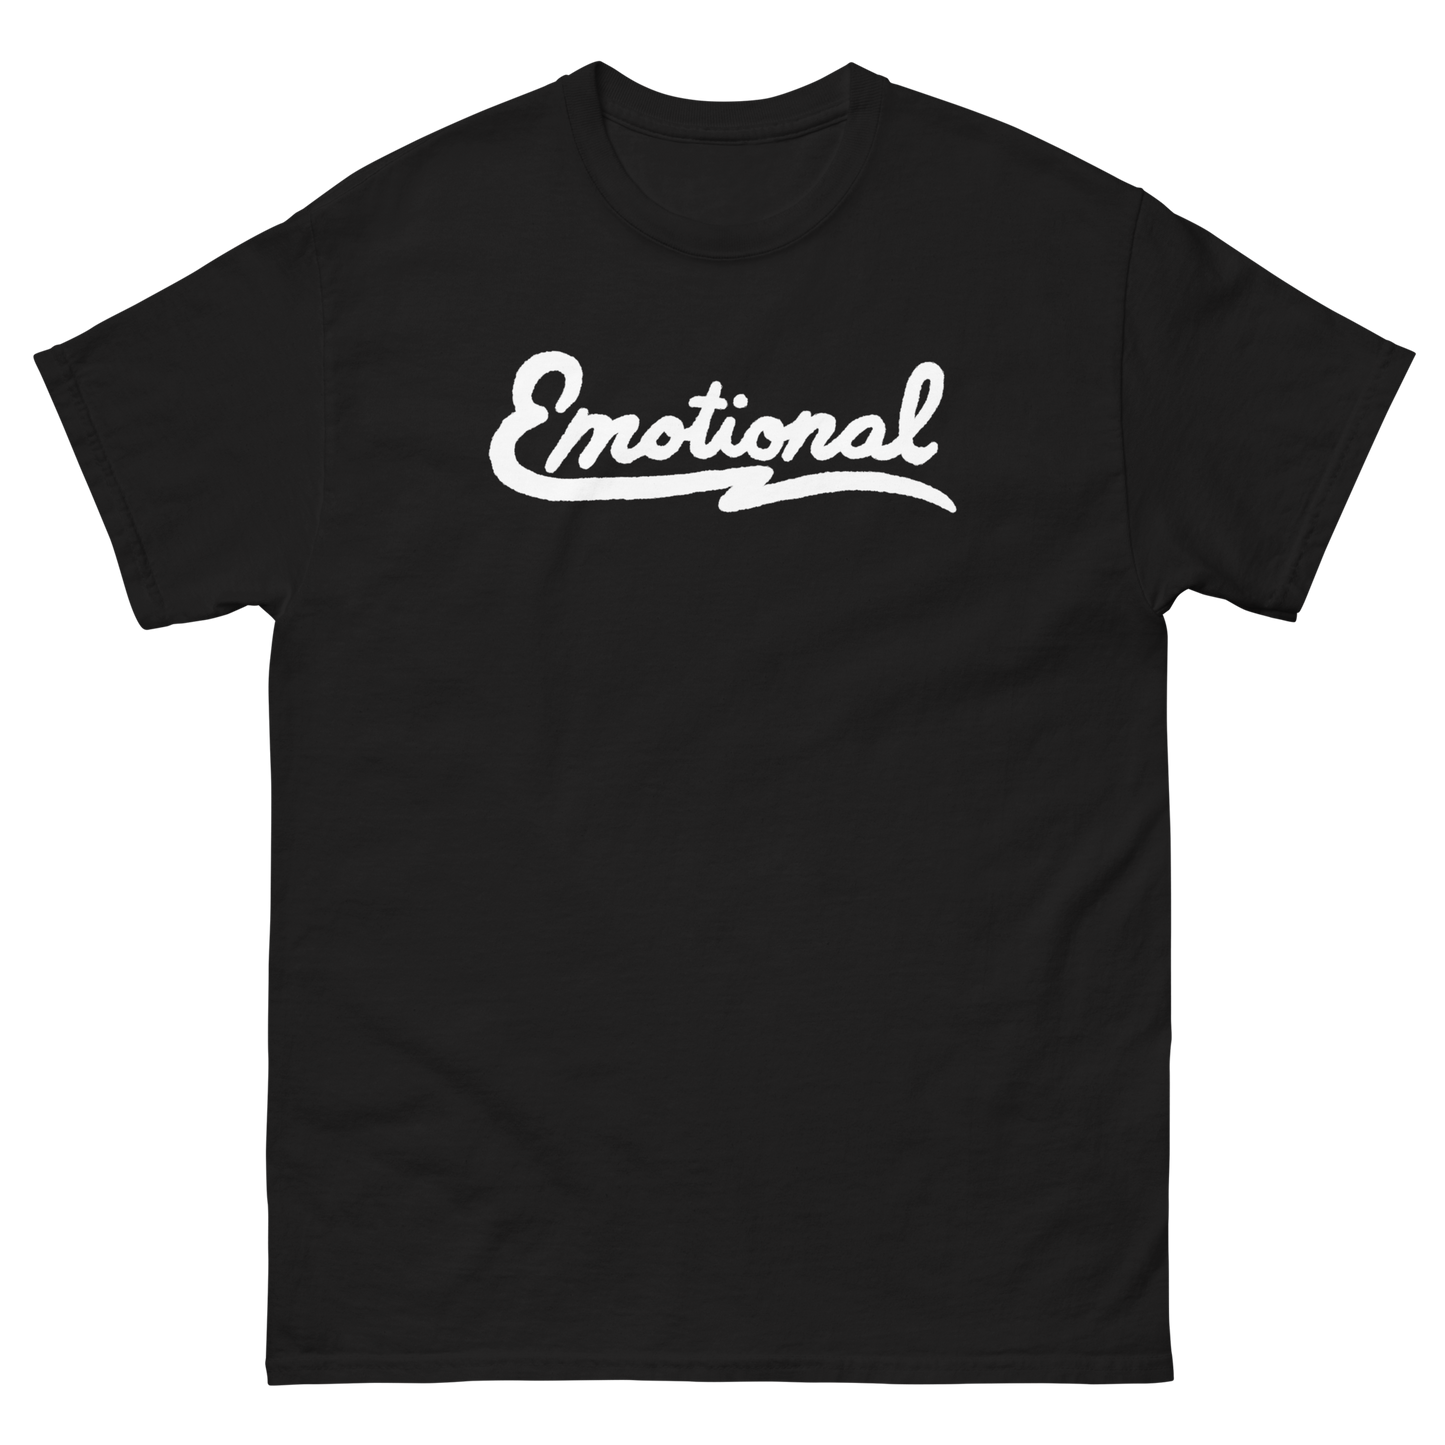 Emotional T-Shirt - T-Shirt - Pretty Bad Co.